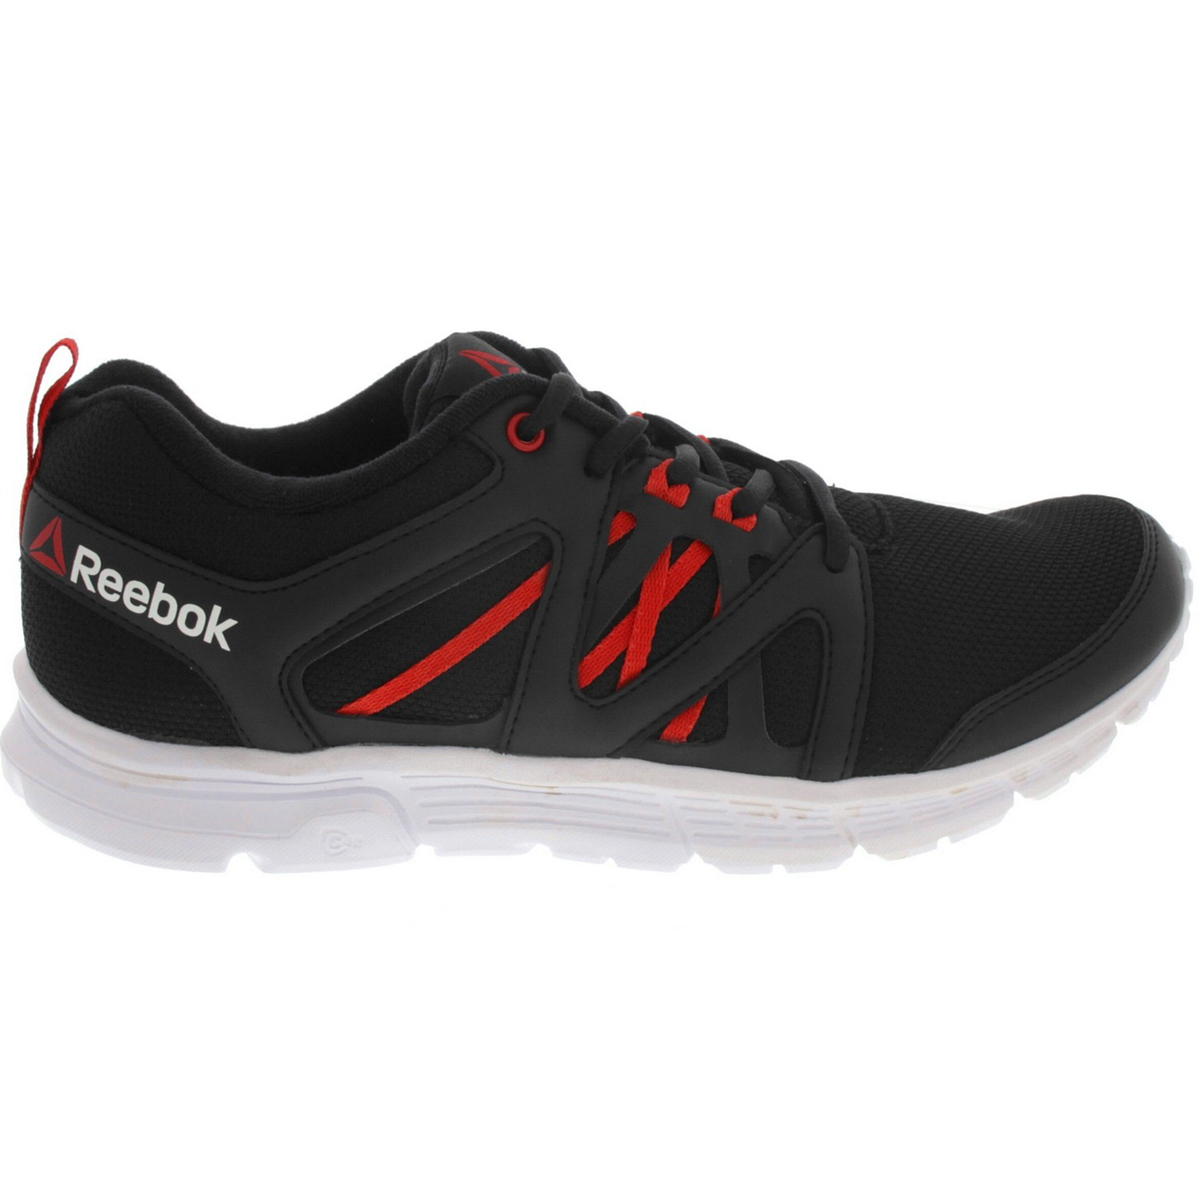 reebok shoes offer in kuwait off 58 